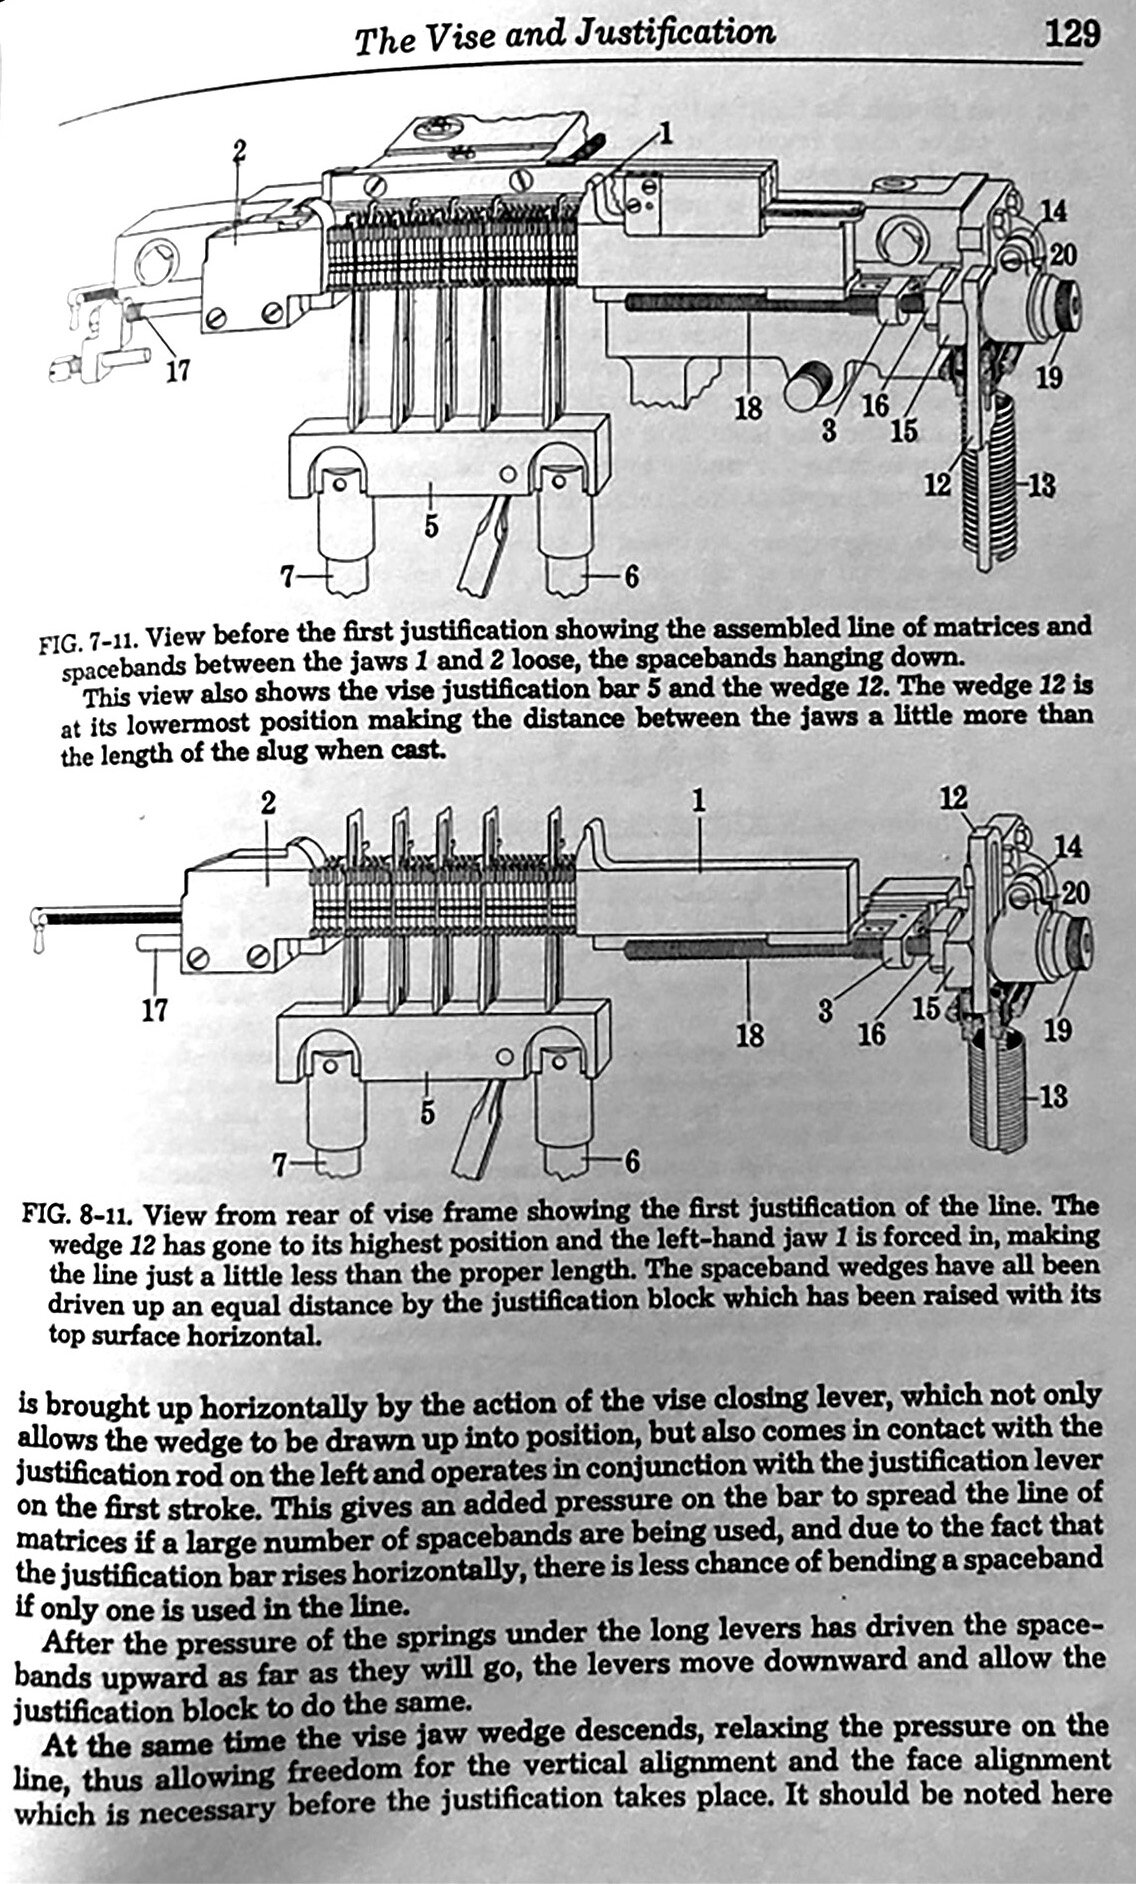 Linotype Machine Principles Page 129.jpg